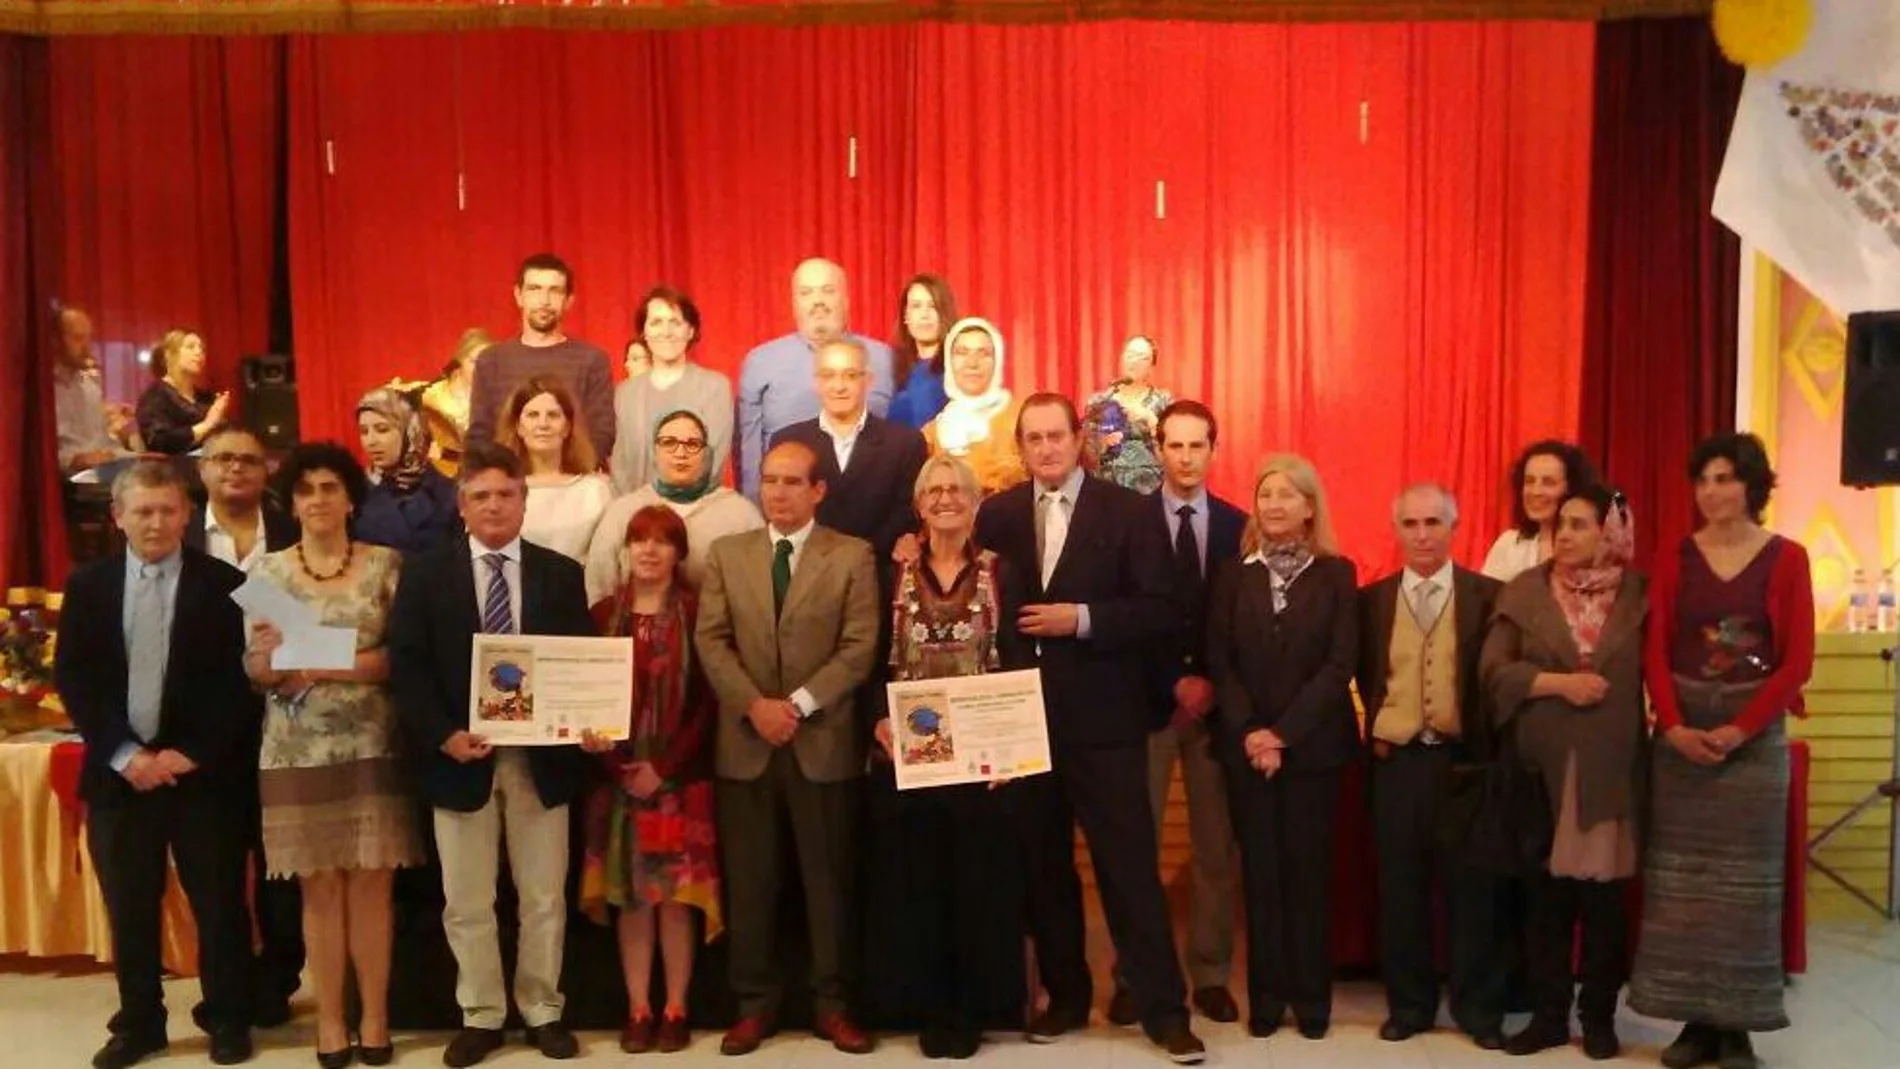 Foto de familia de la entrega del «I Premio Internacional por la Educación Universal Malala 2014» al Colegio Jacinto Benavente de Tetuán-Marruecos concedido por Paz y Cooperación.